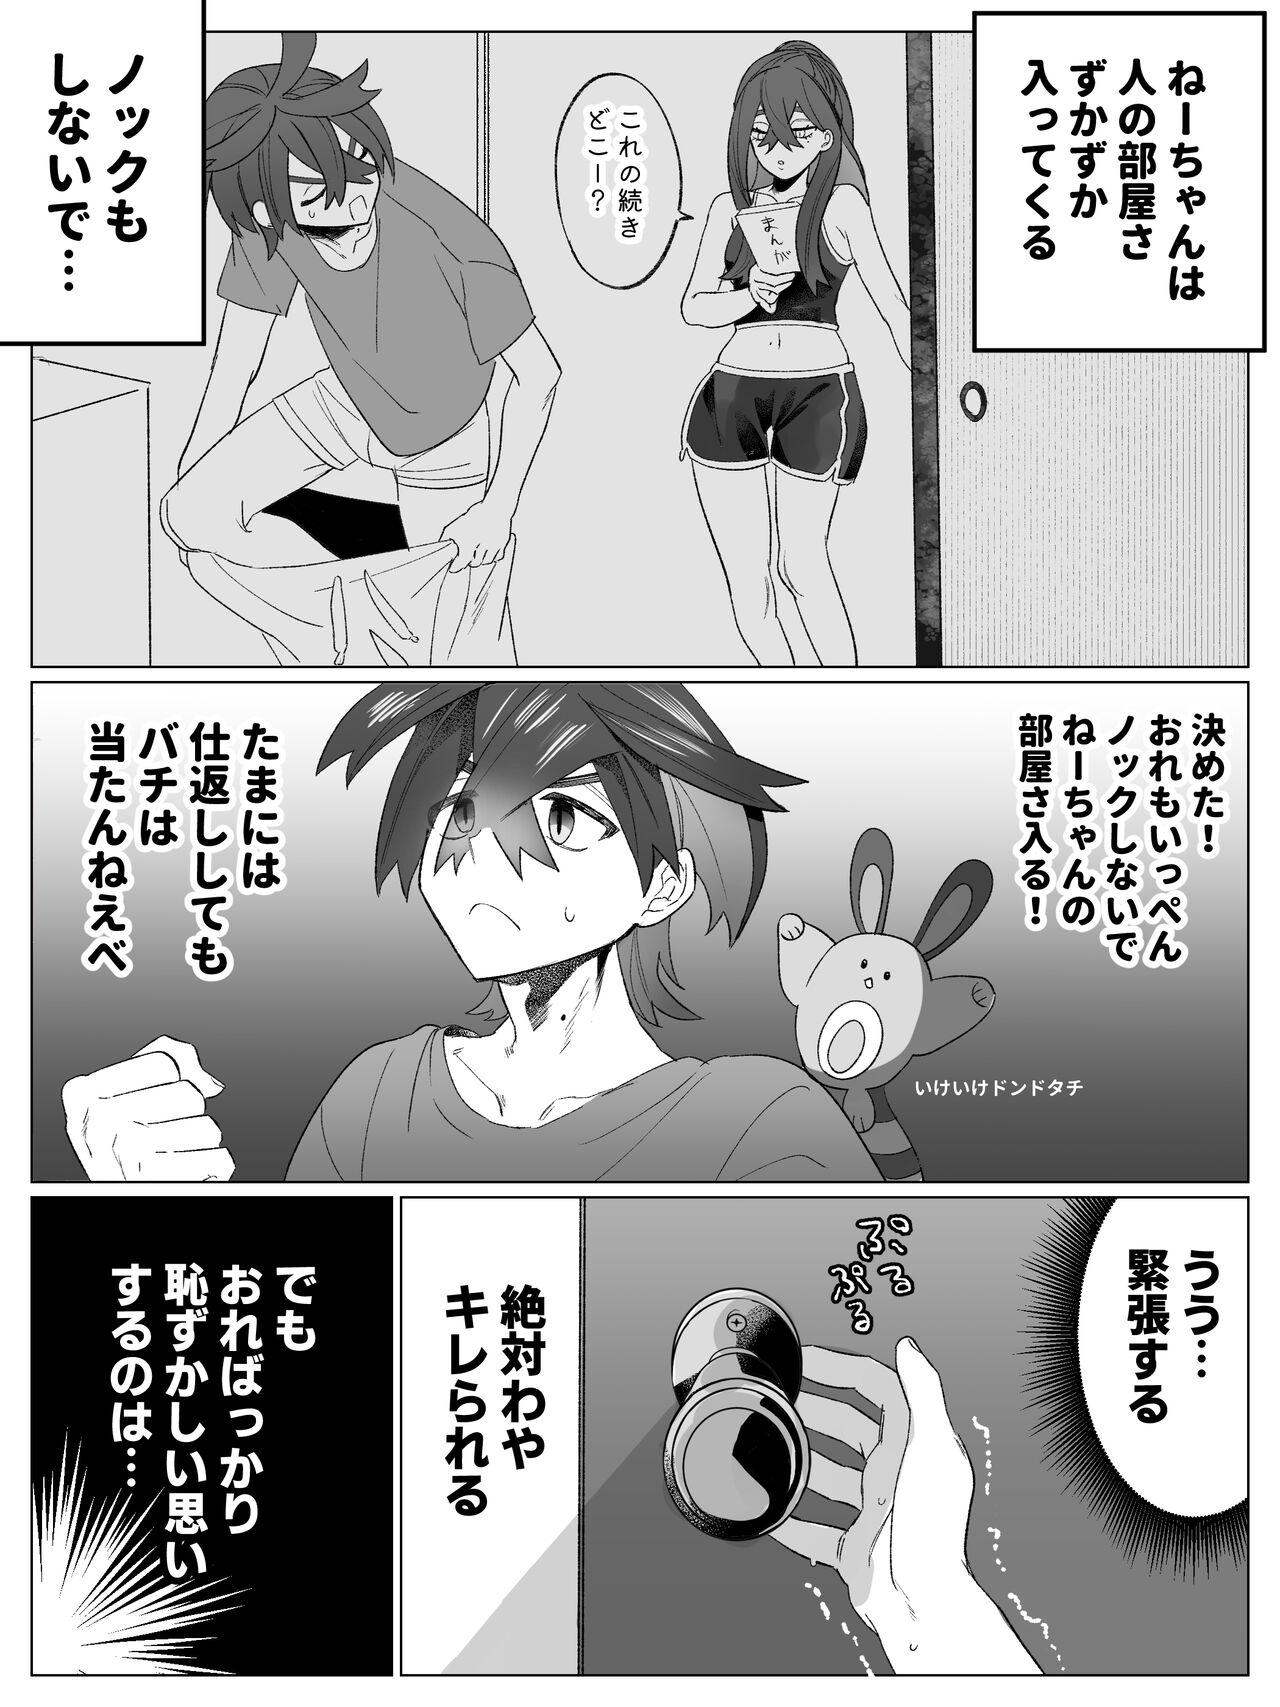 Morrita Miuchi no Onanie Miru no wa Kitsui - Pokemon | pocket monsters Bangbros - Picture 2